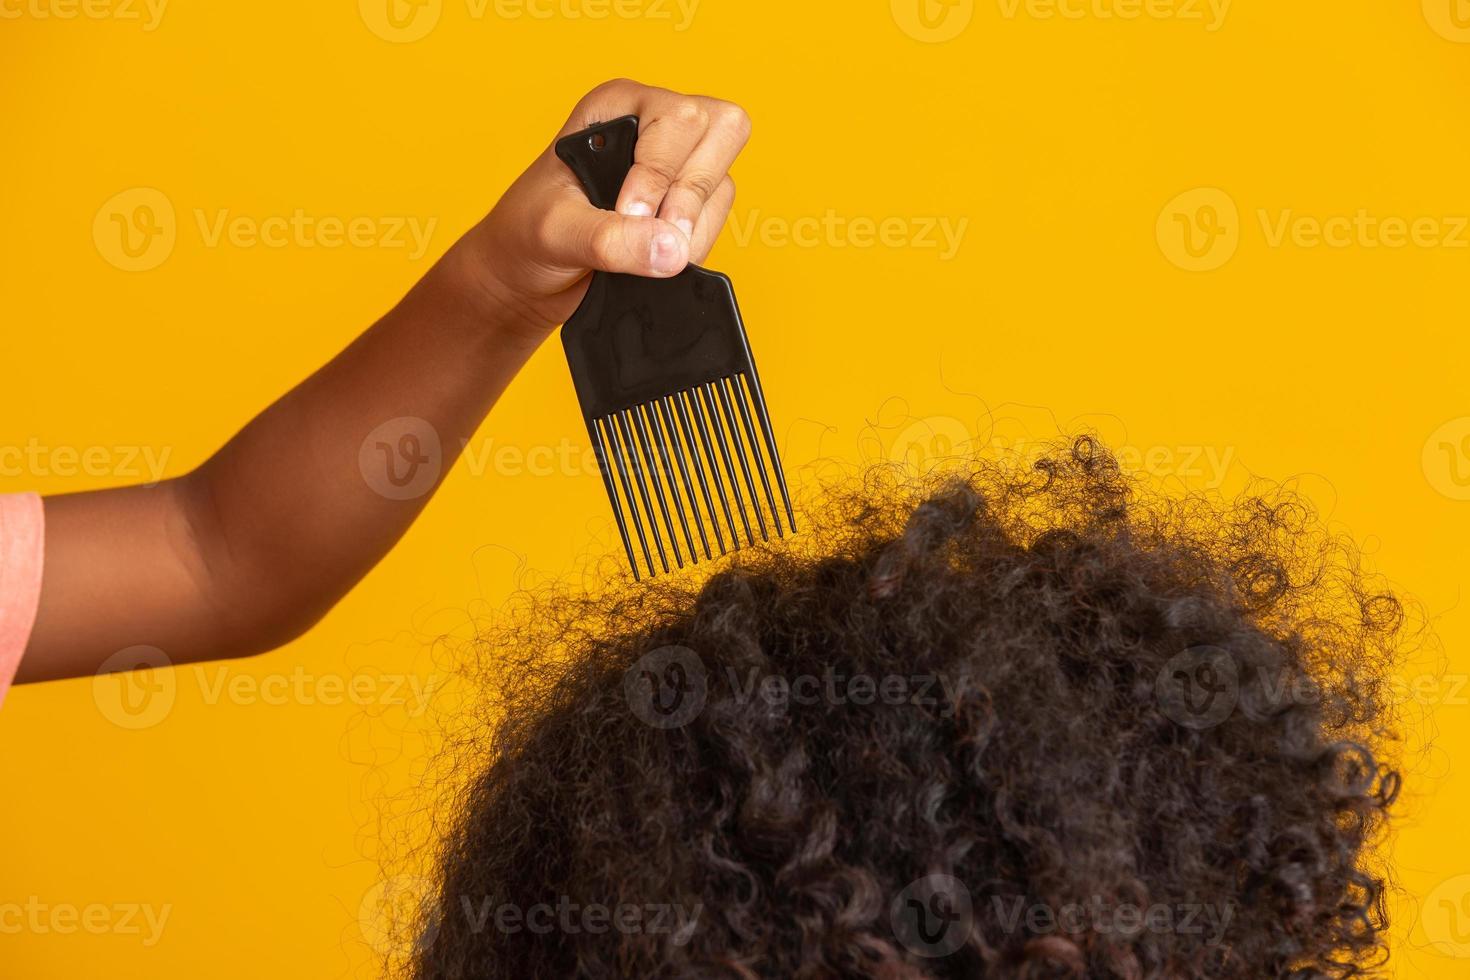 giovani afroamericani che pettinano i capelli isolati. forchetta per pettinare i capelli ricci. sfondo giallo. foto